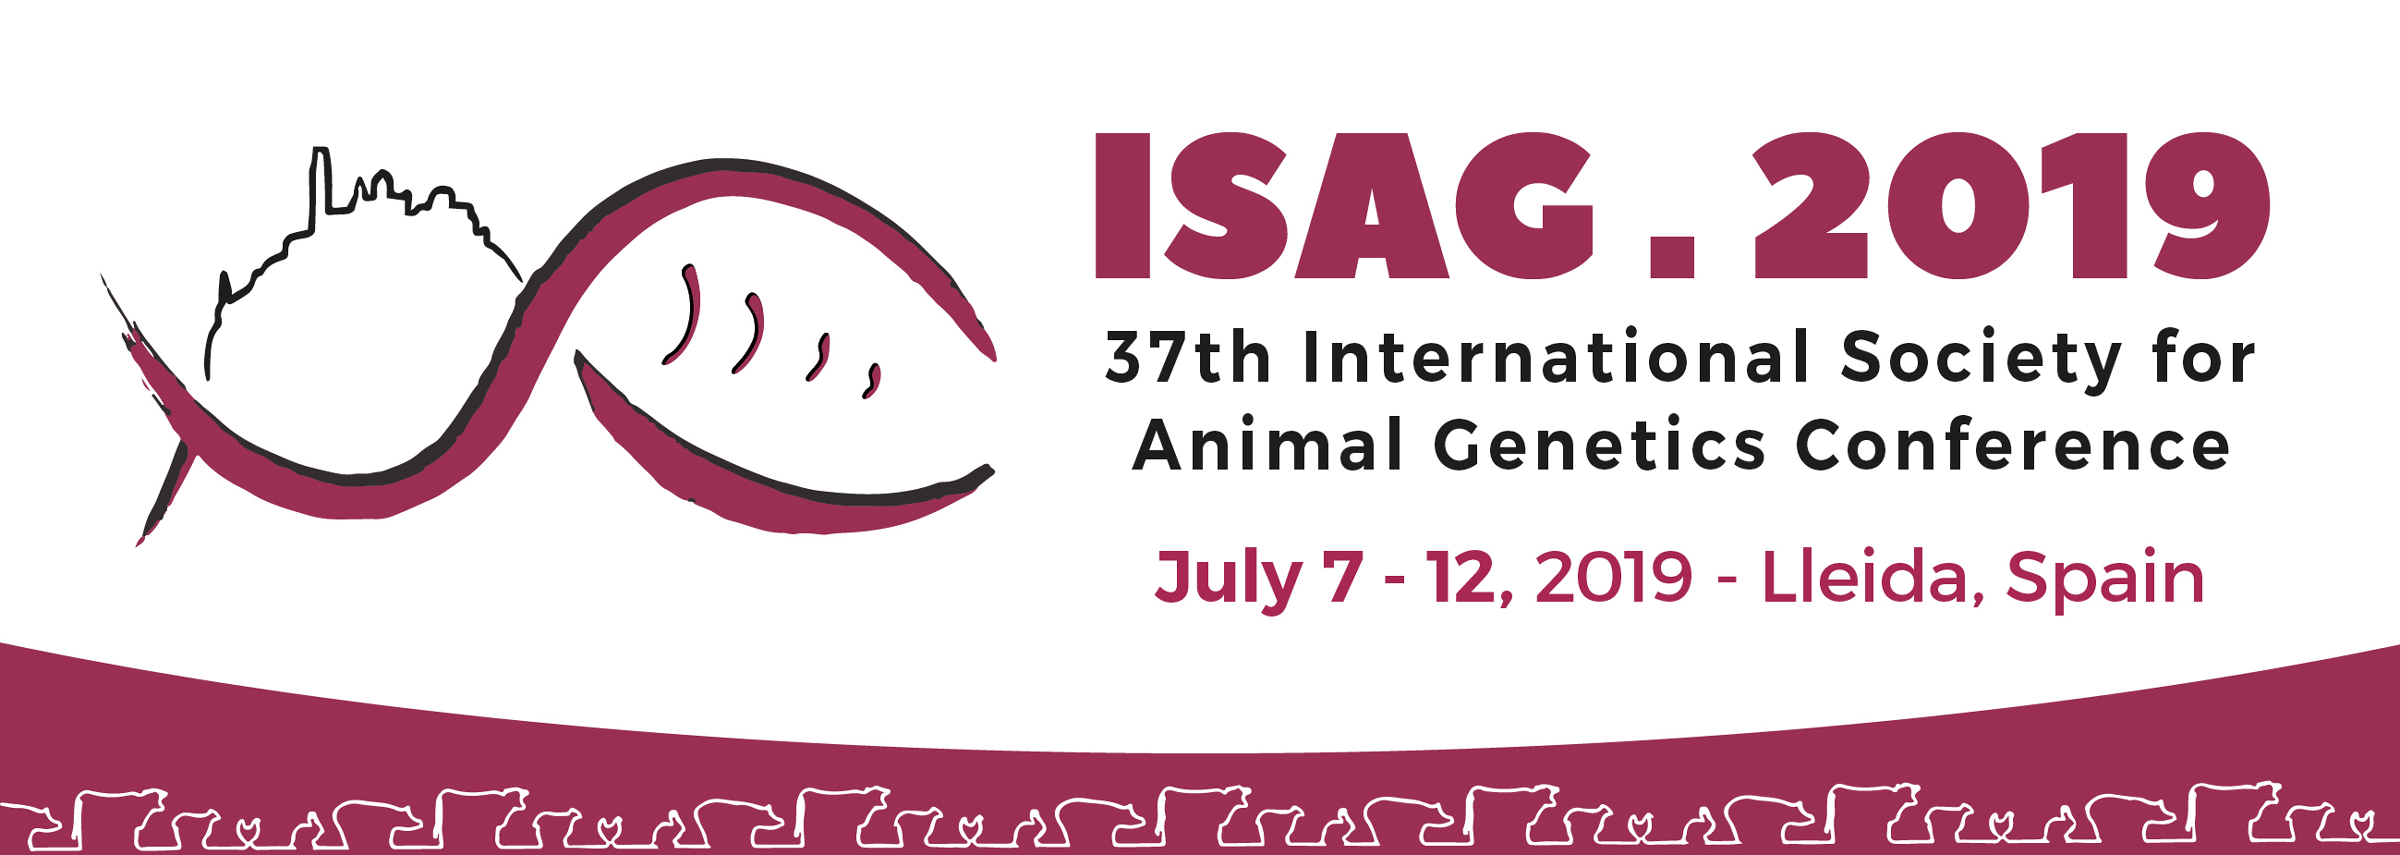 2019-ISAG-banner